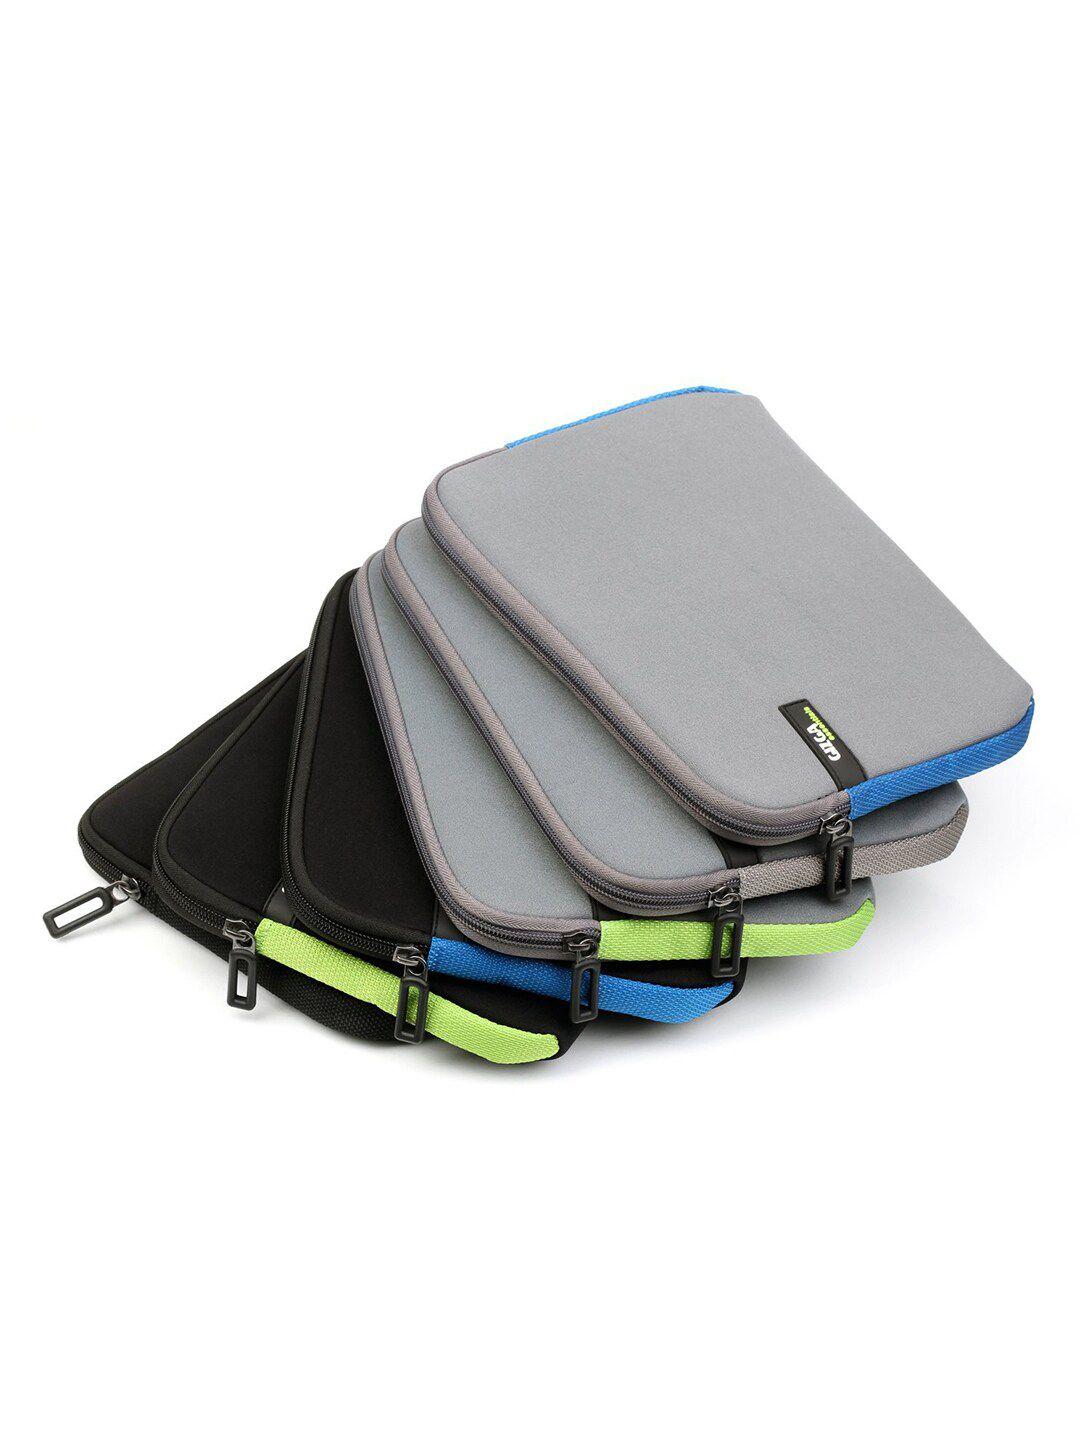 gizga essentials padded tablet sleeve laptop bag